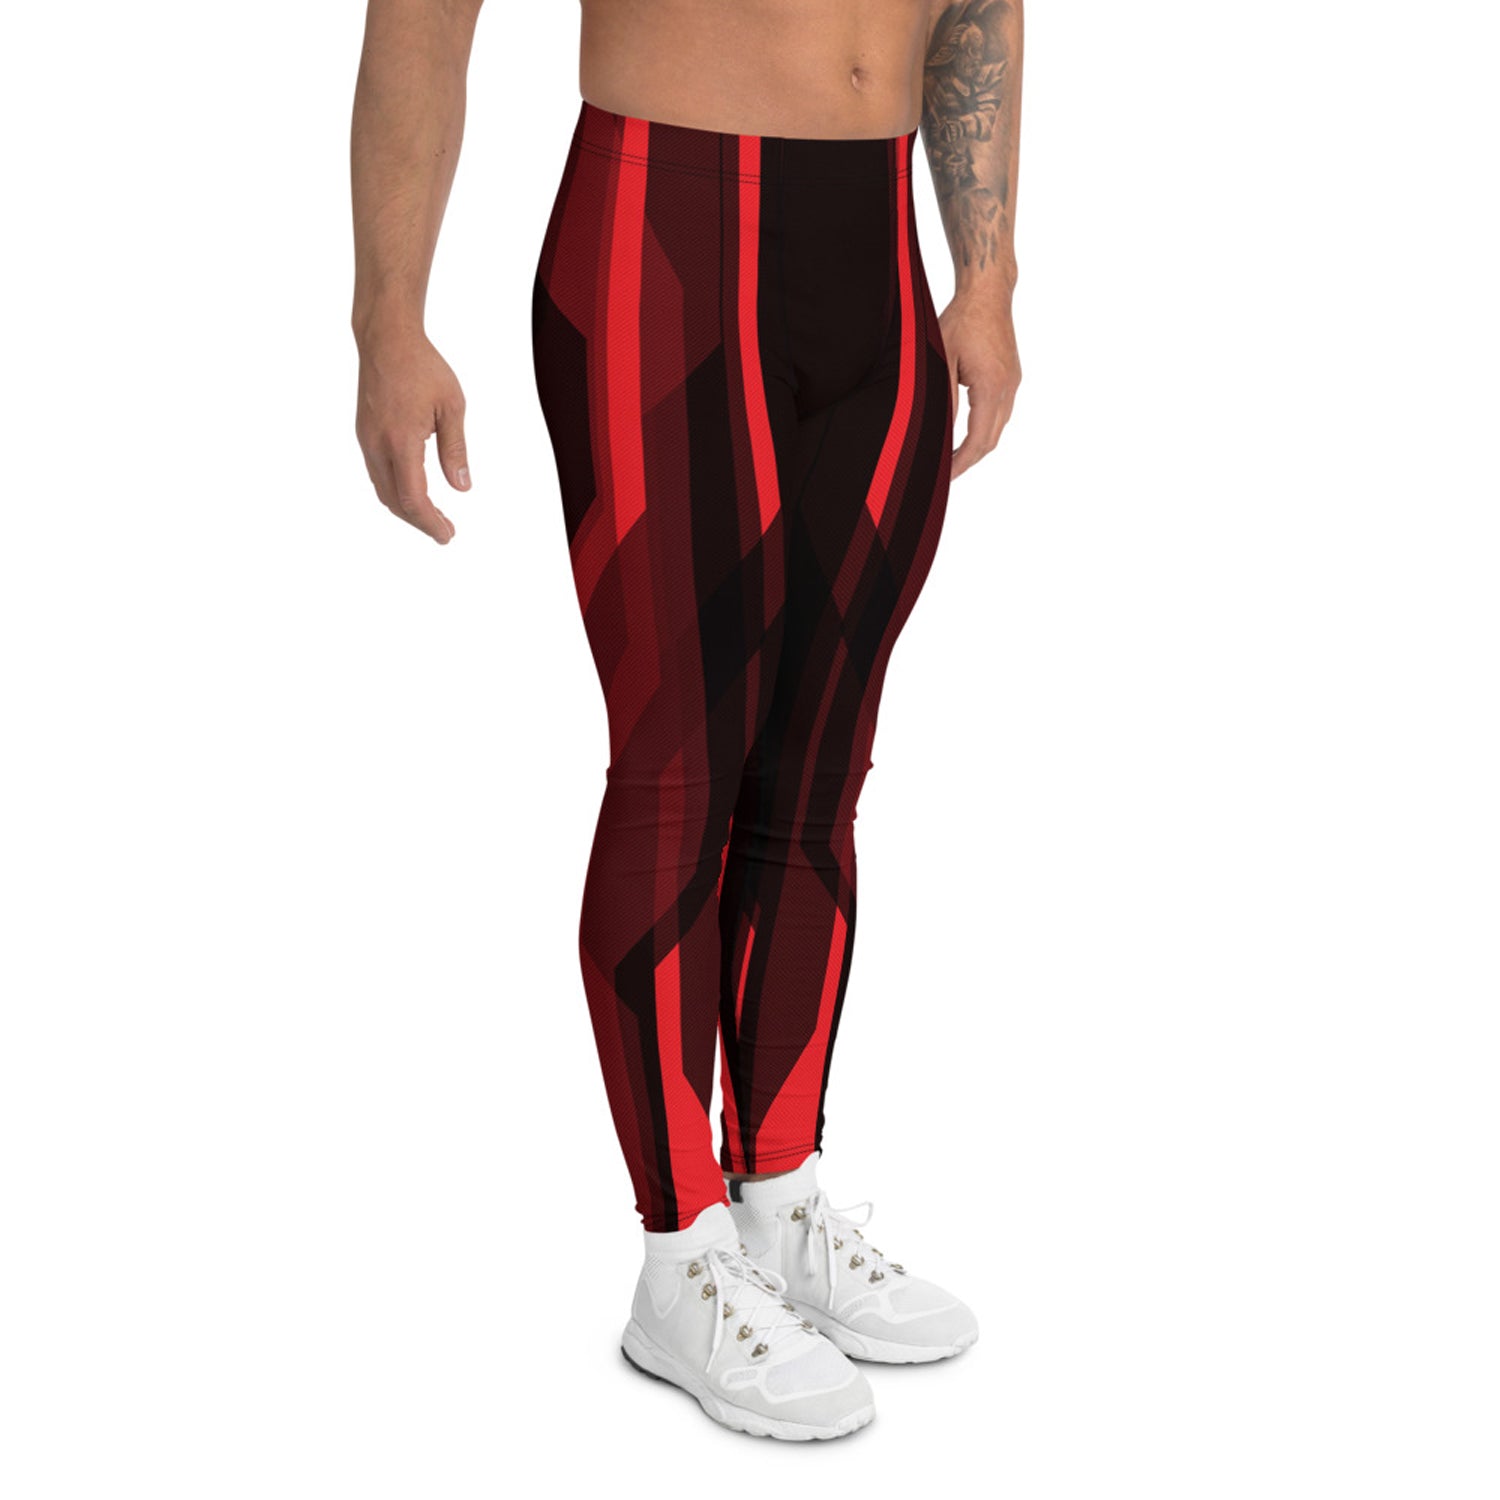 Red Tron inspired leggings